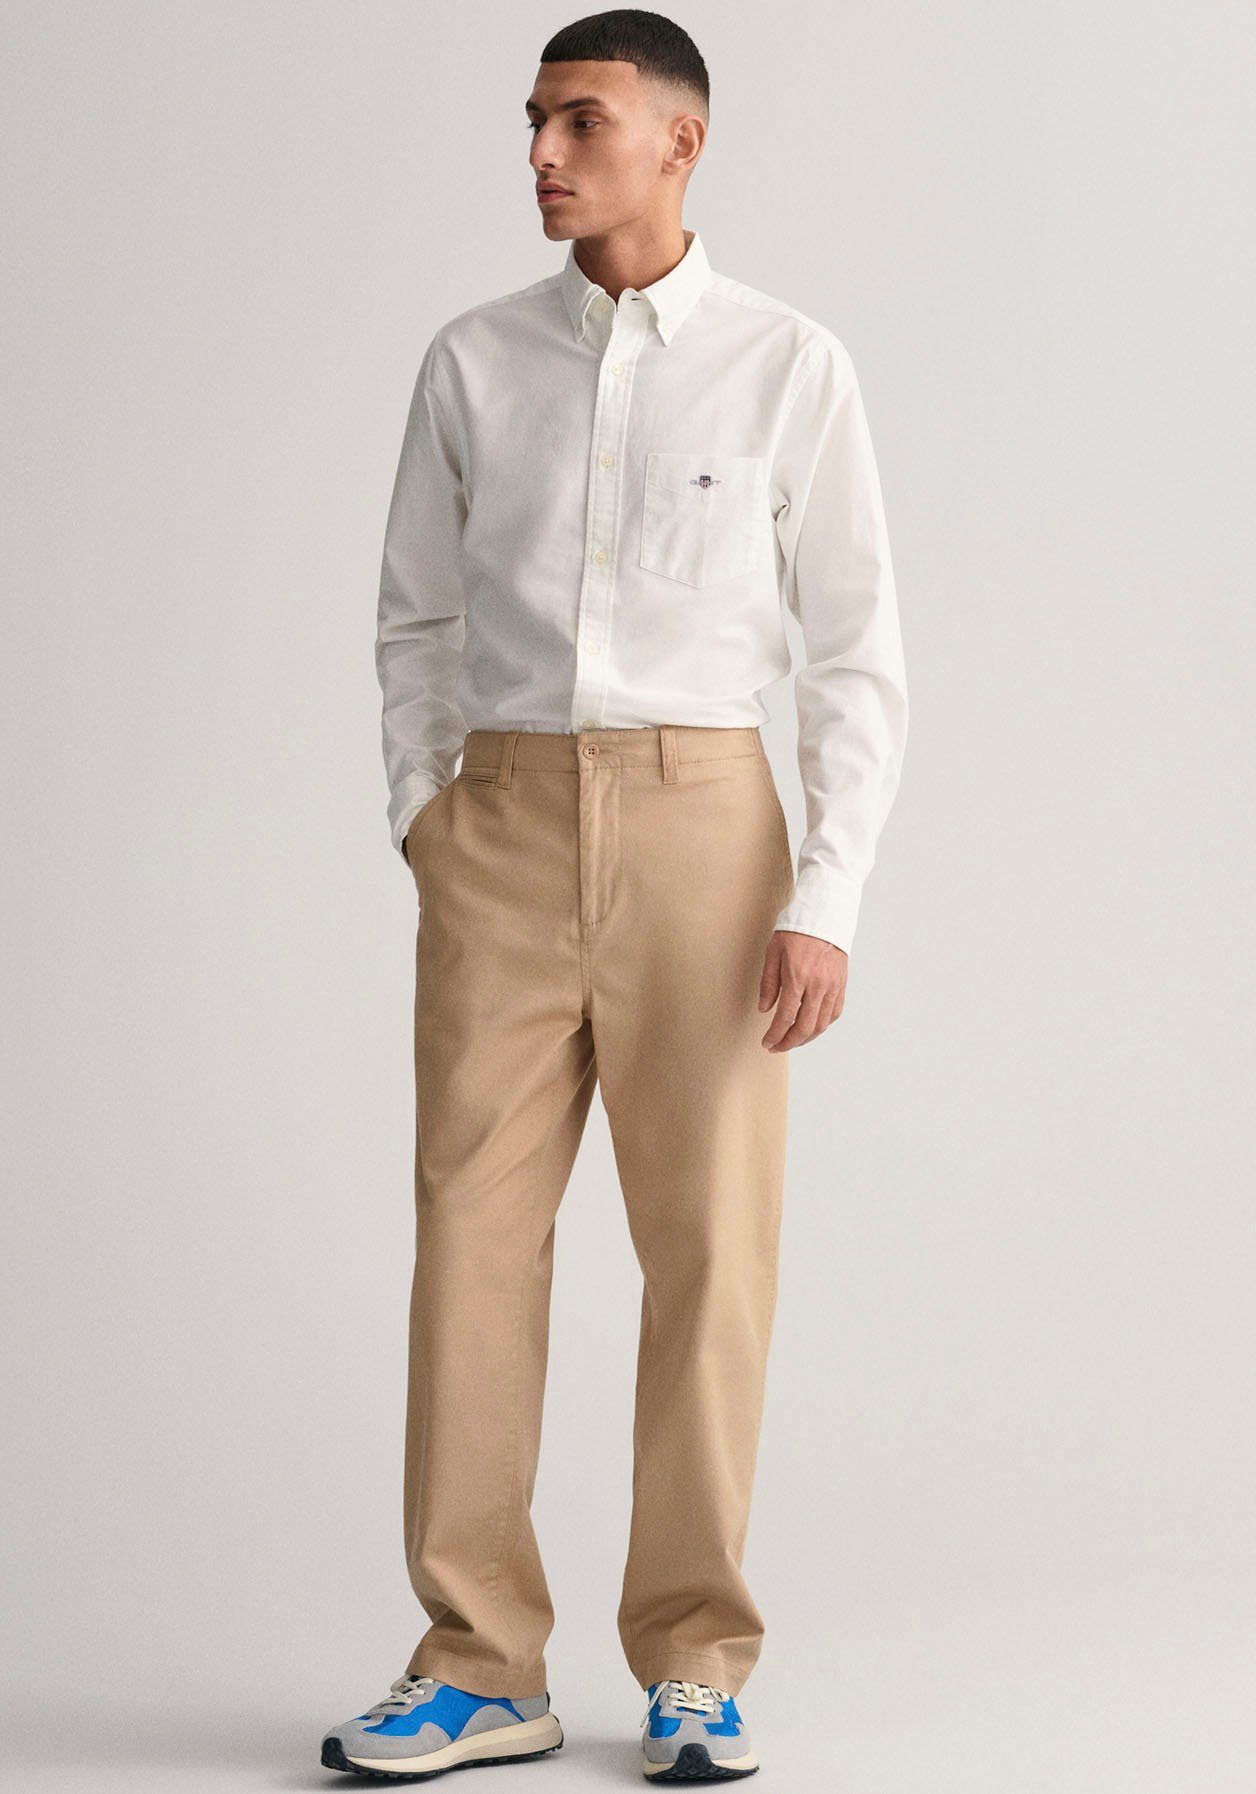 SHIRT Hemd REG Regular OXFORD white Businesshemd Oxford Gant Fit